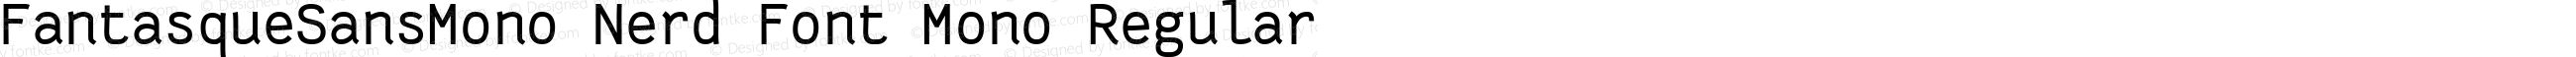 Fantasque Sans Mono Regular Nerd Font Complete Mono